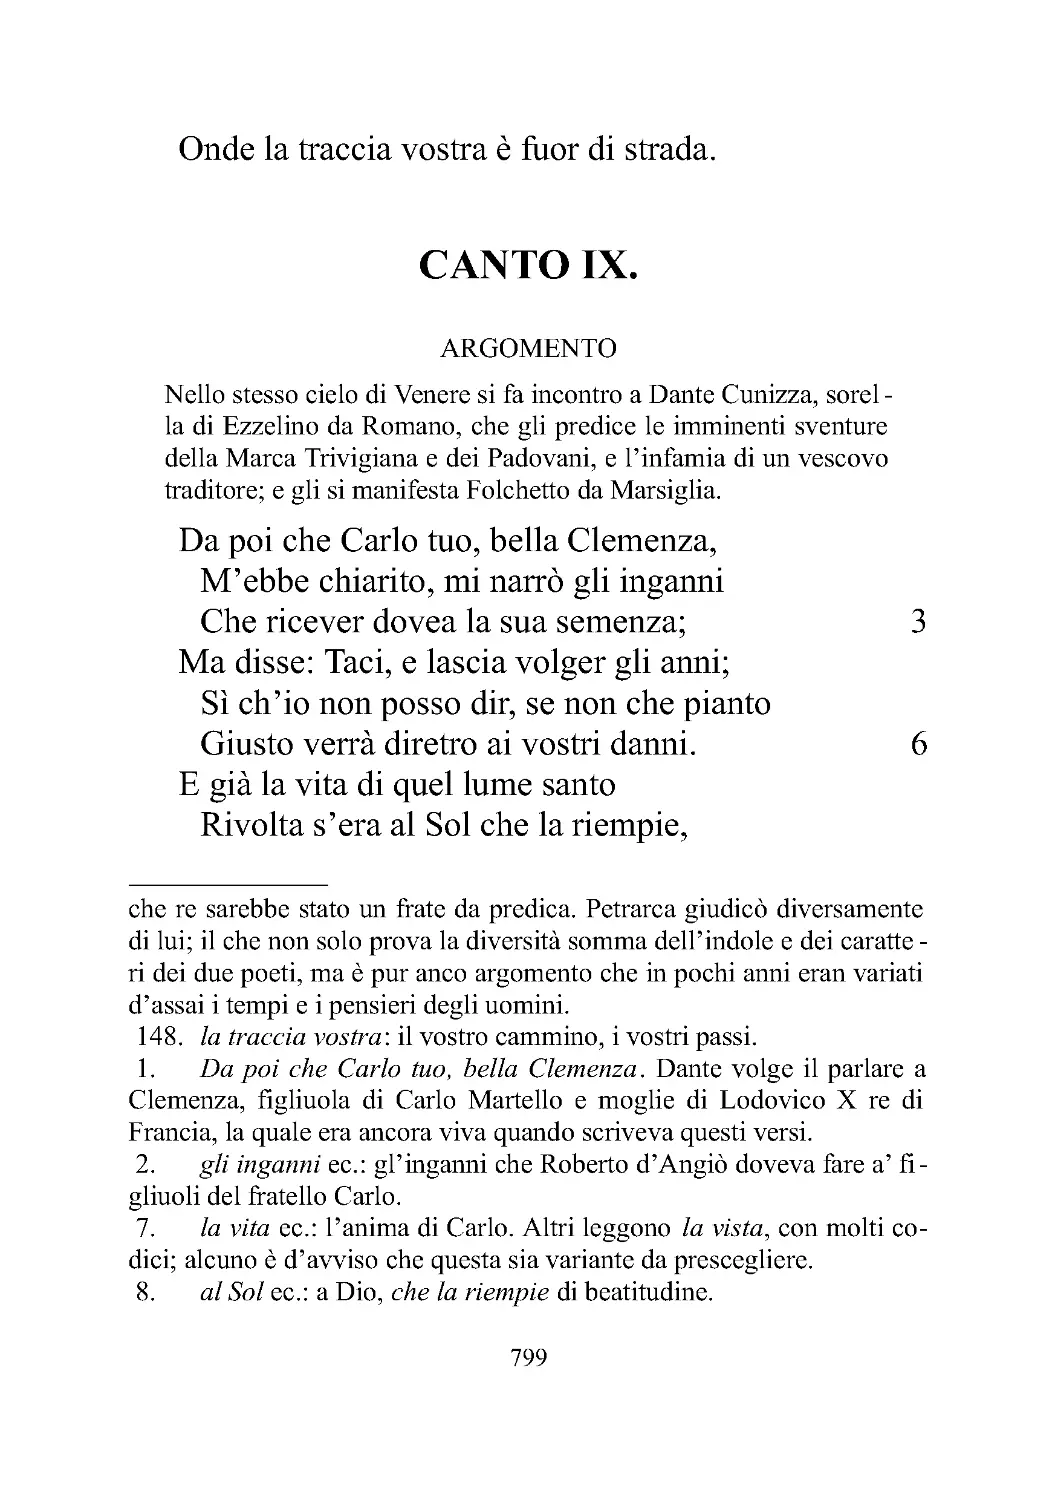 CANTO IX.